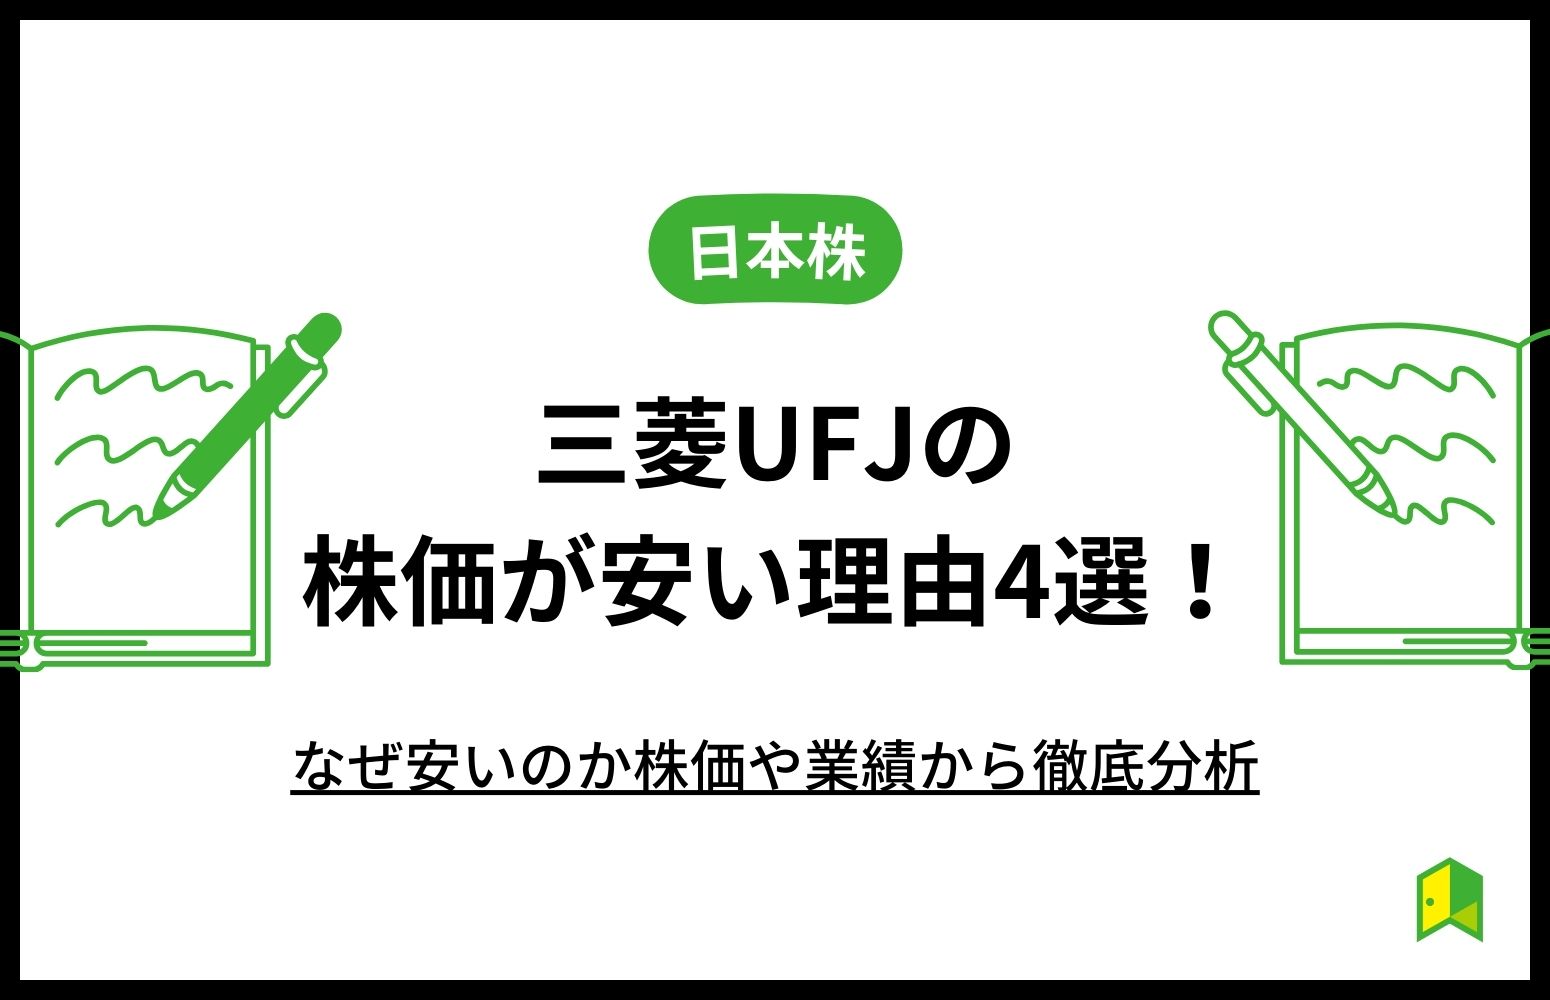 三菱UFJ株価安い理由アイキャッチ